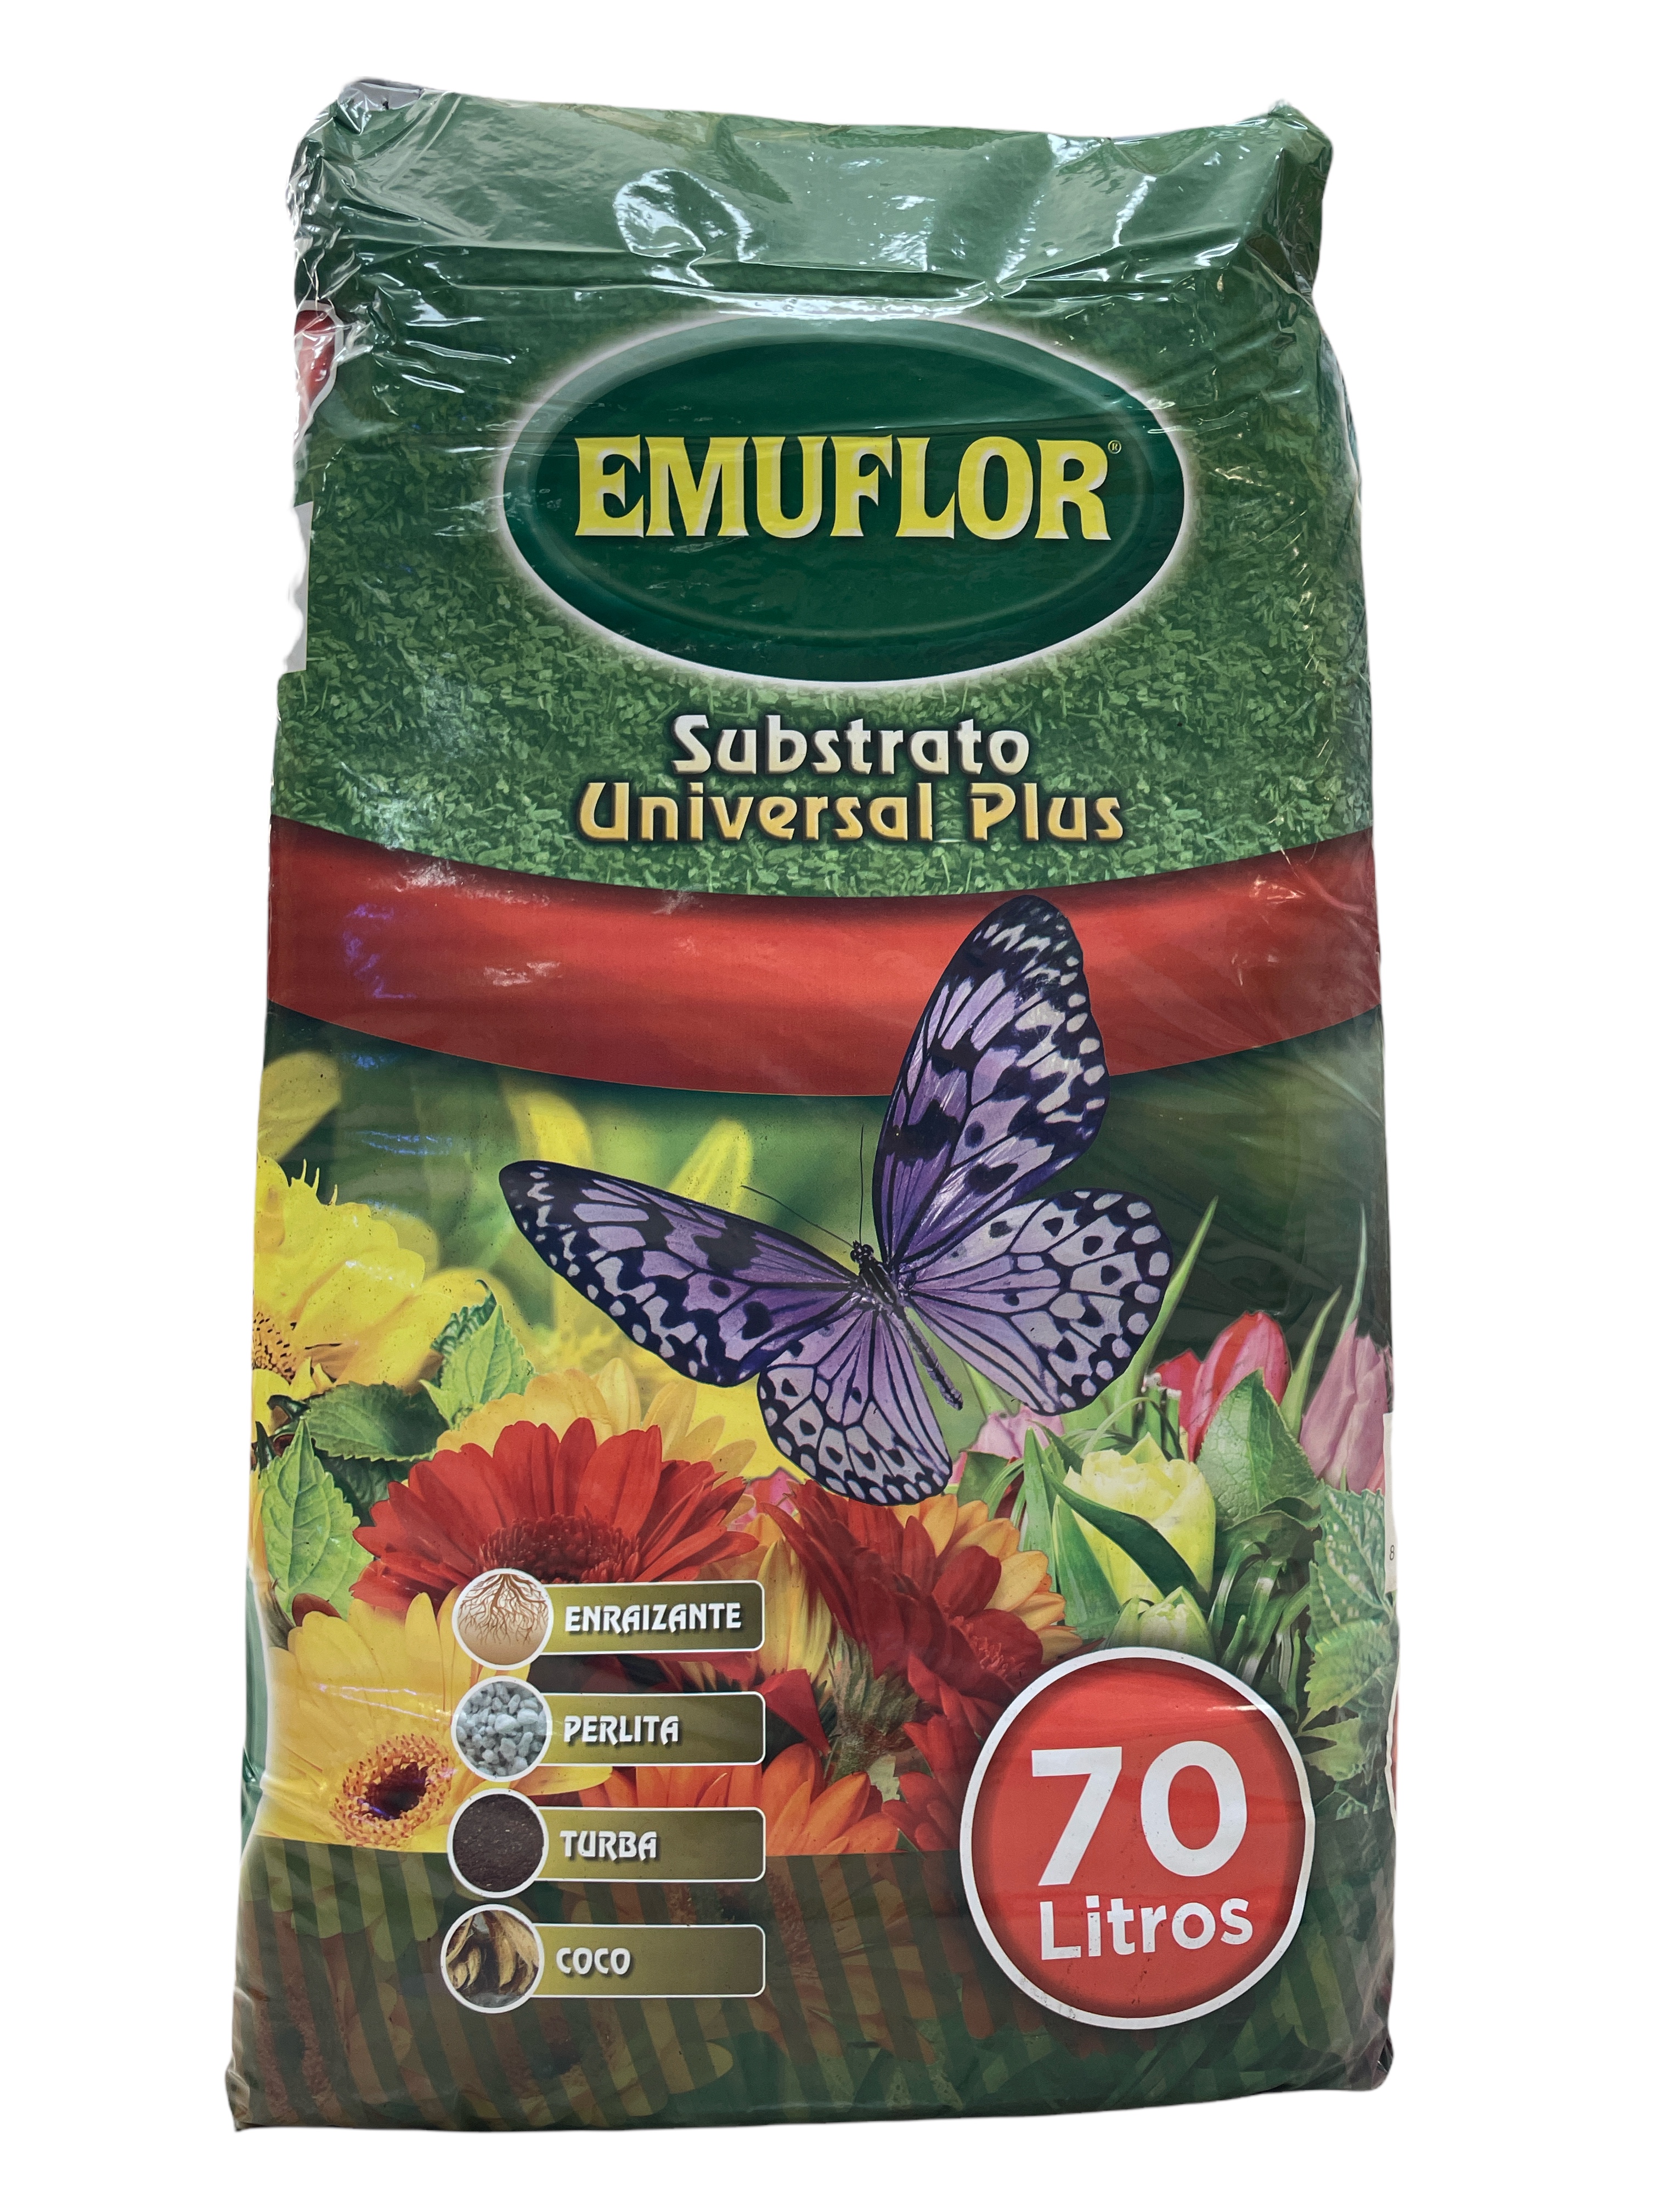 El sustrato Emuflo universal plus es ideal para todo tipo de plantas de jardin, de maceta y plantas de huerta.